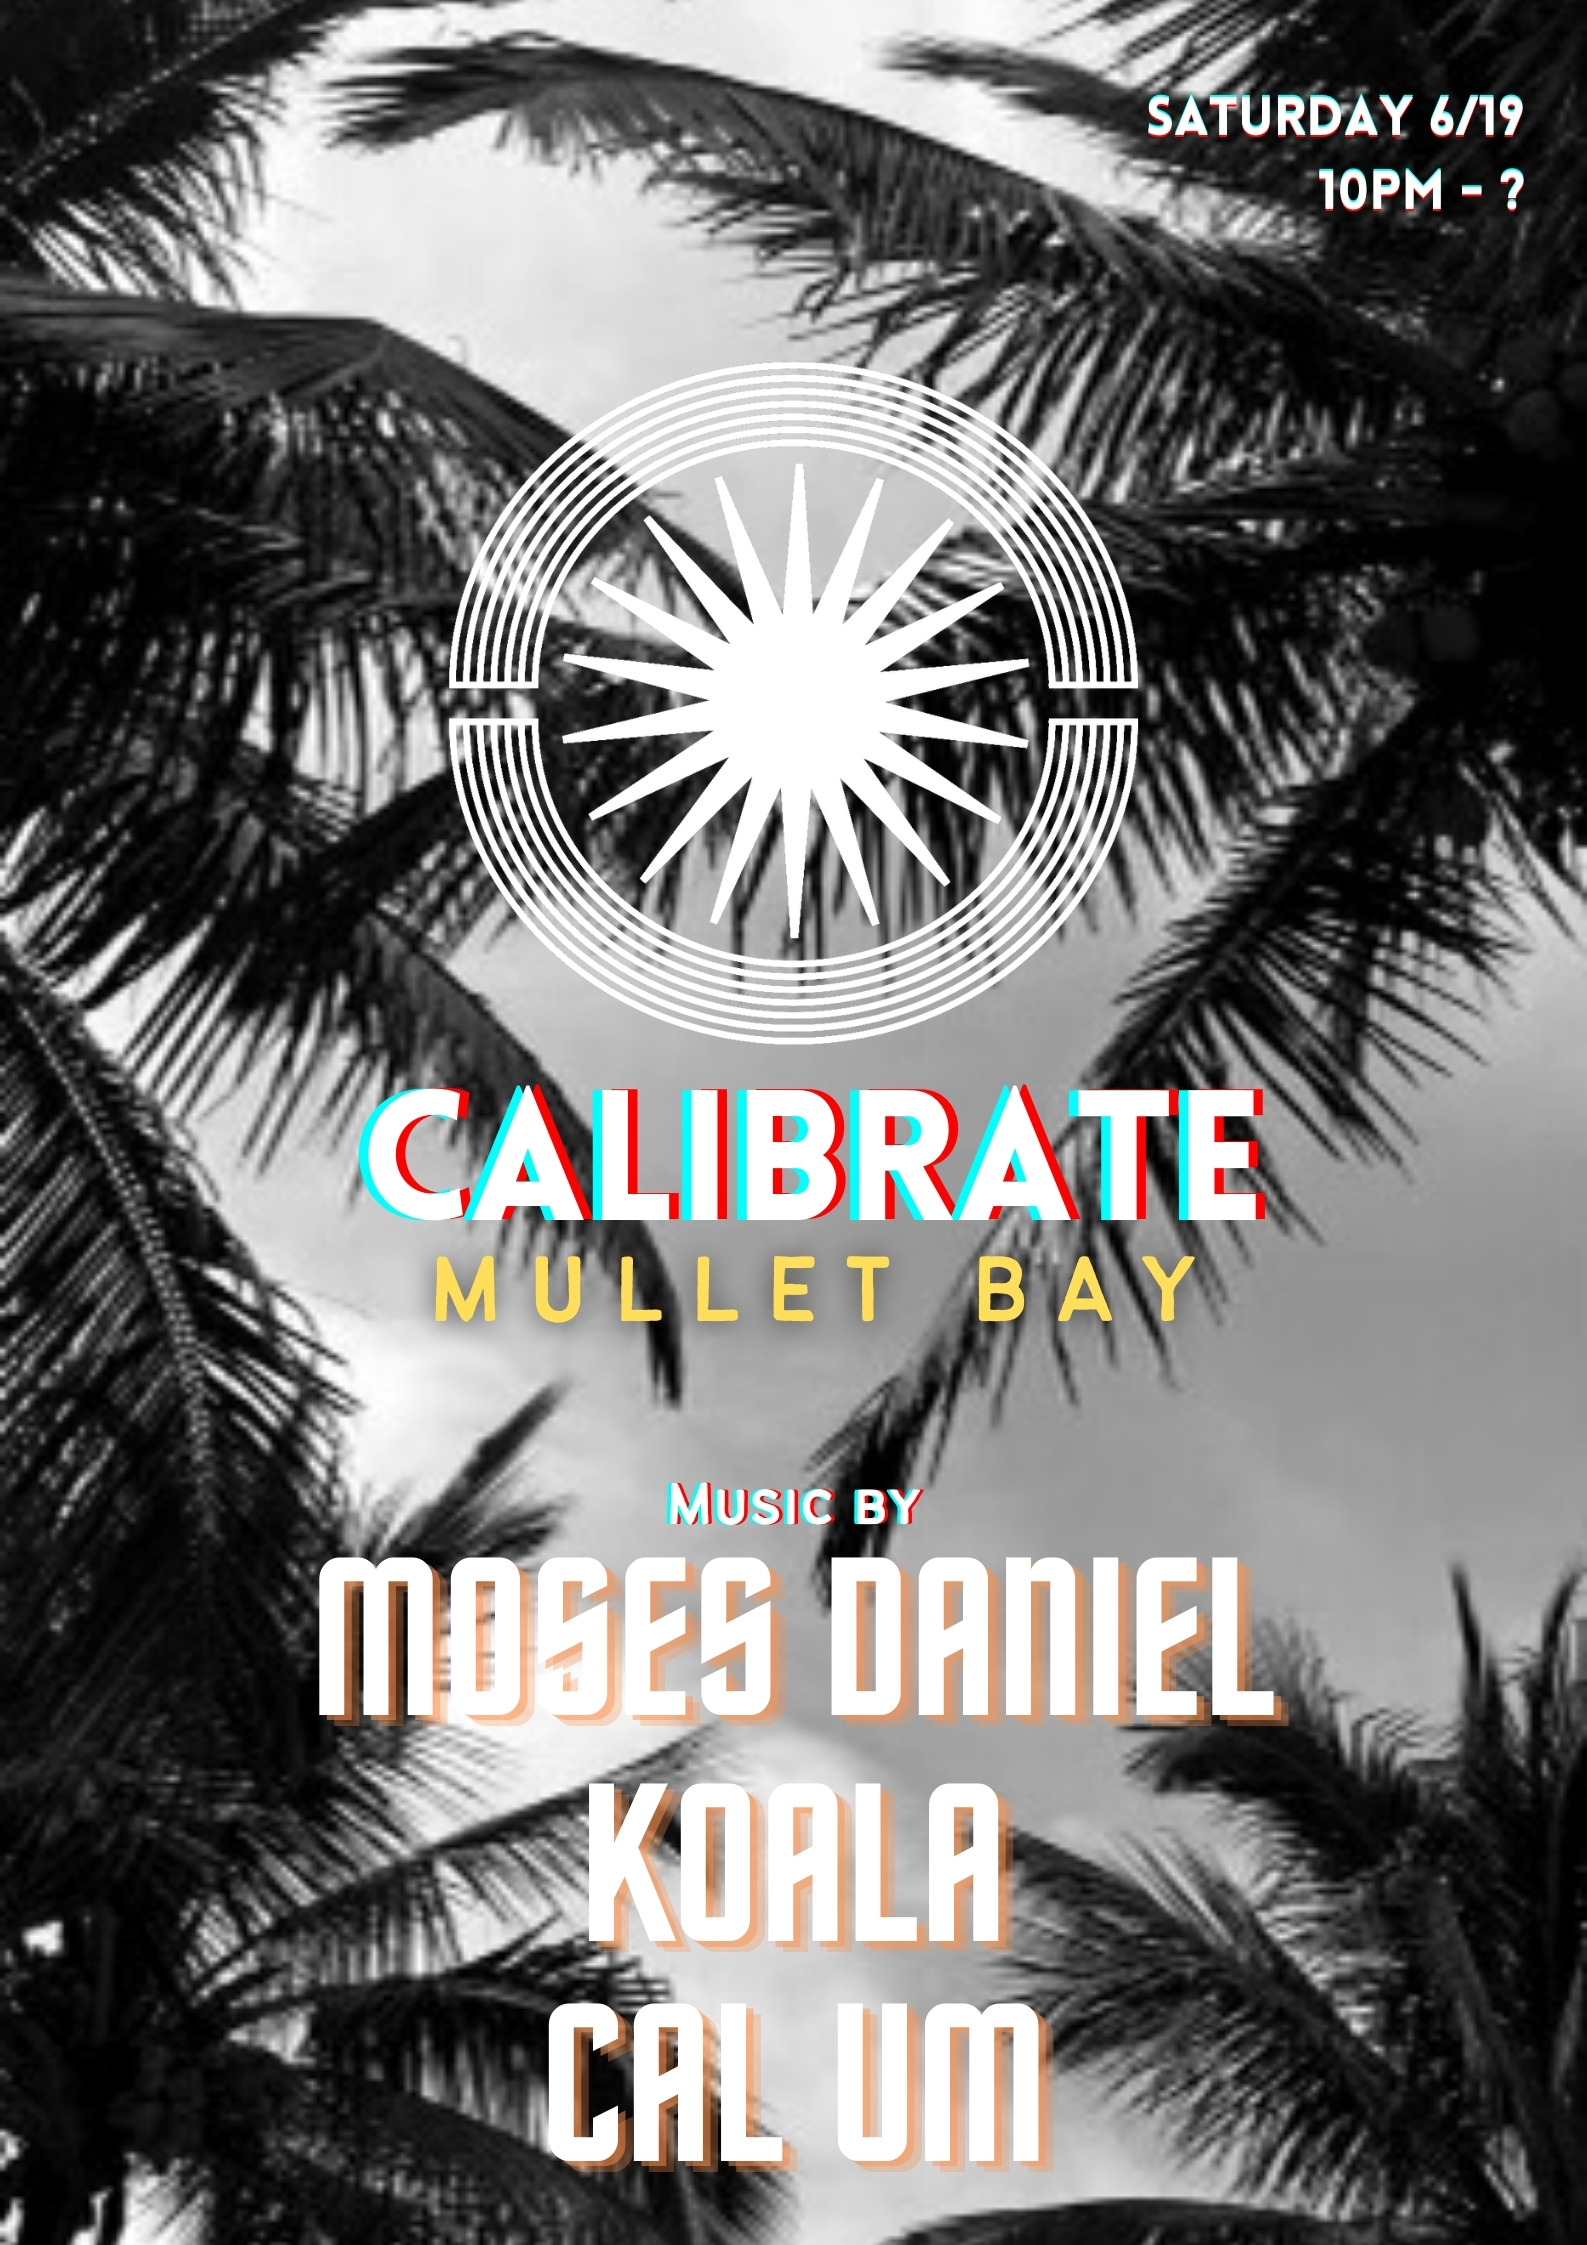 Calibrate SXM Mullet Bay - Moses Daniel, KOALA, Cal Um